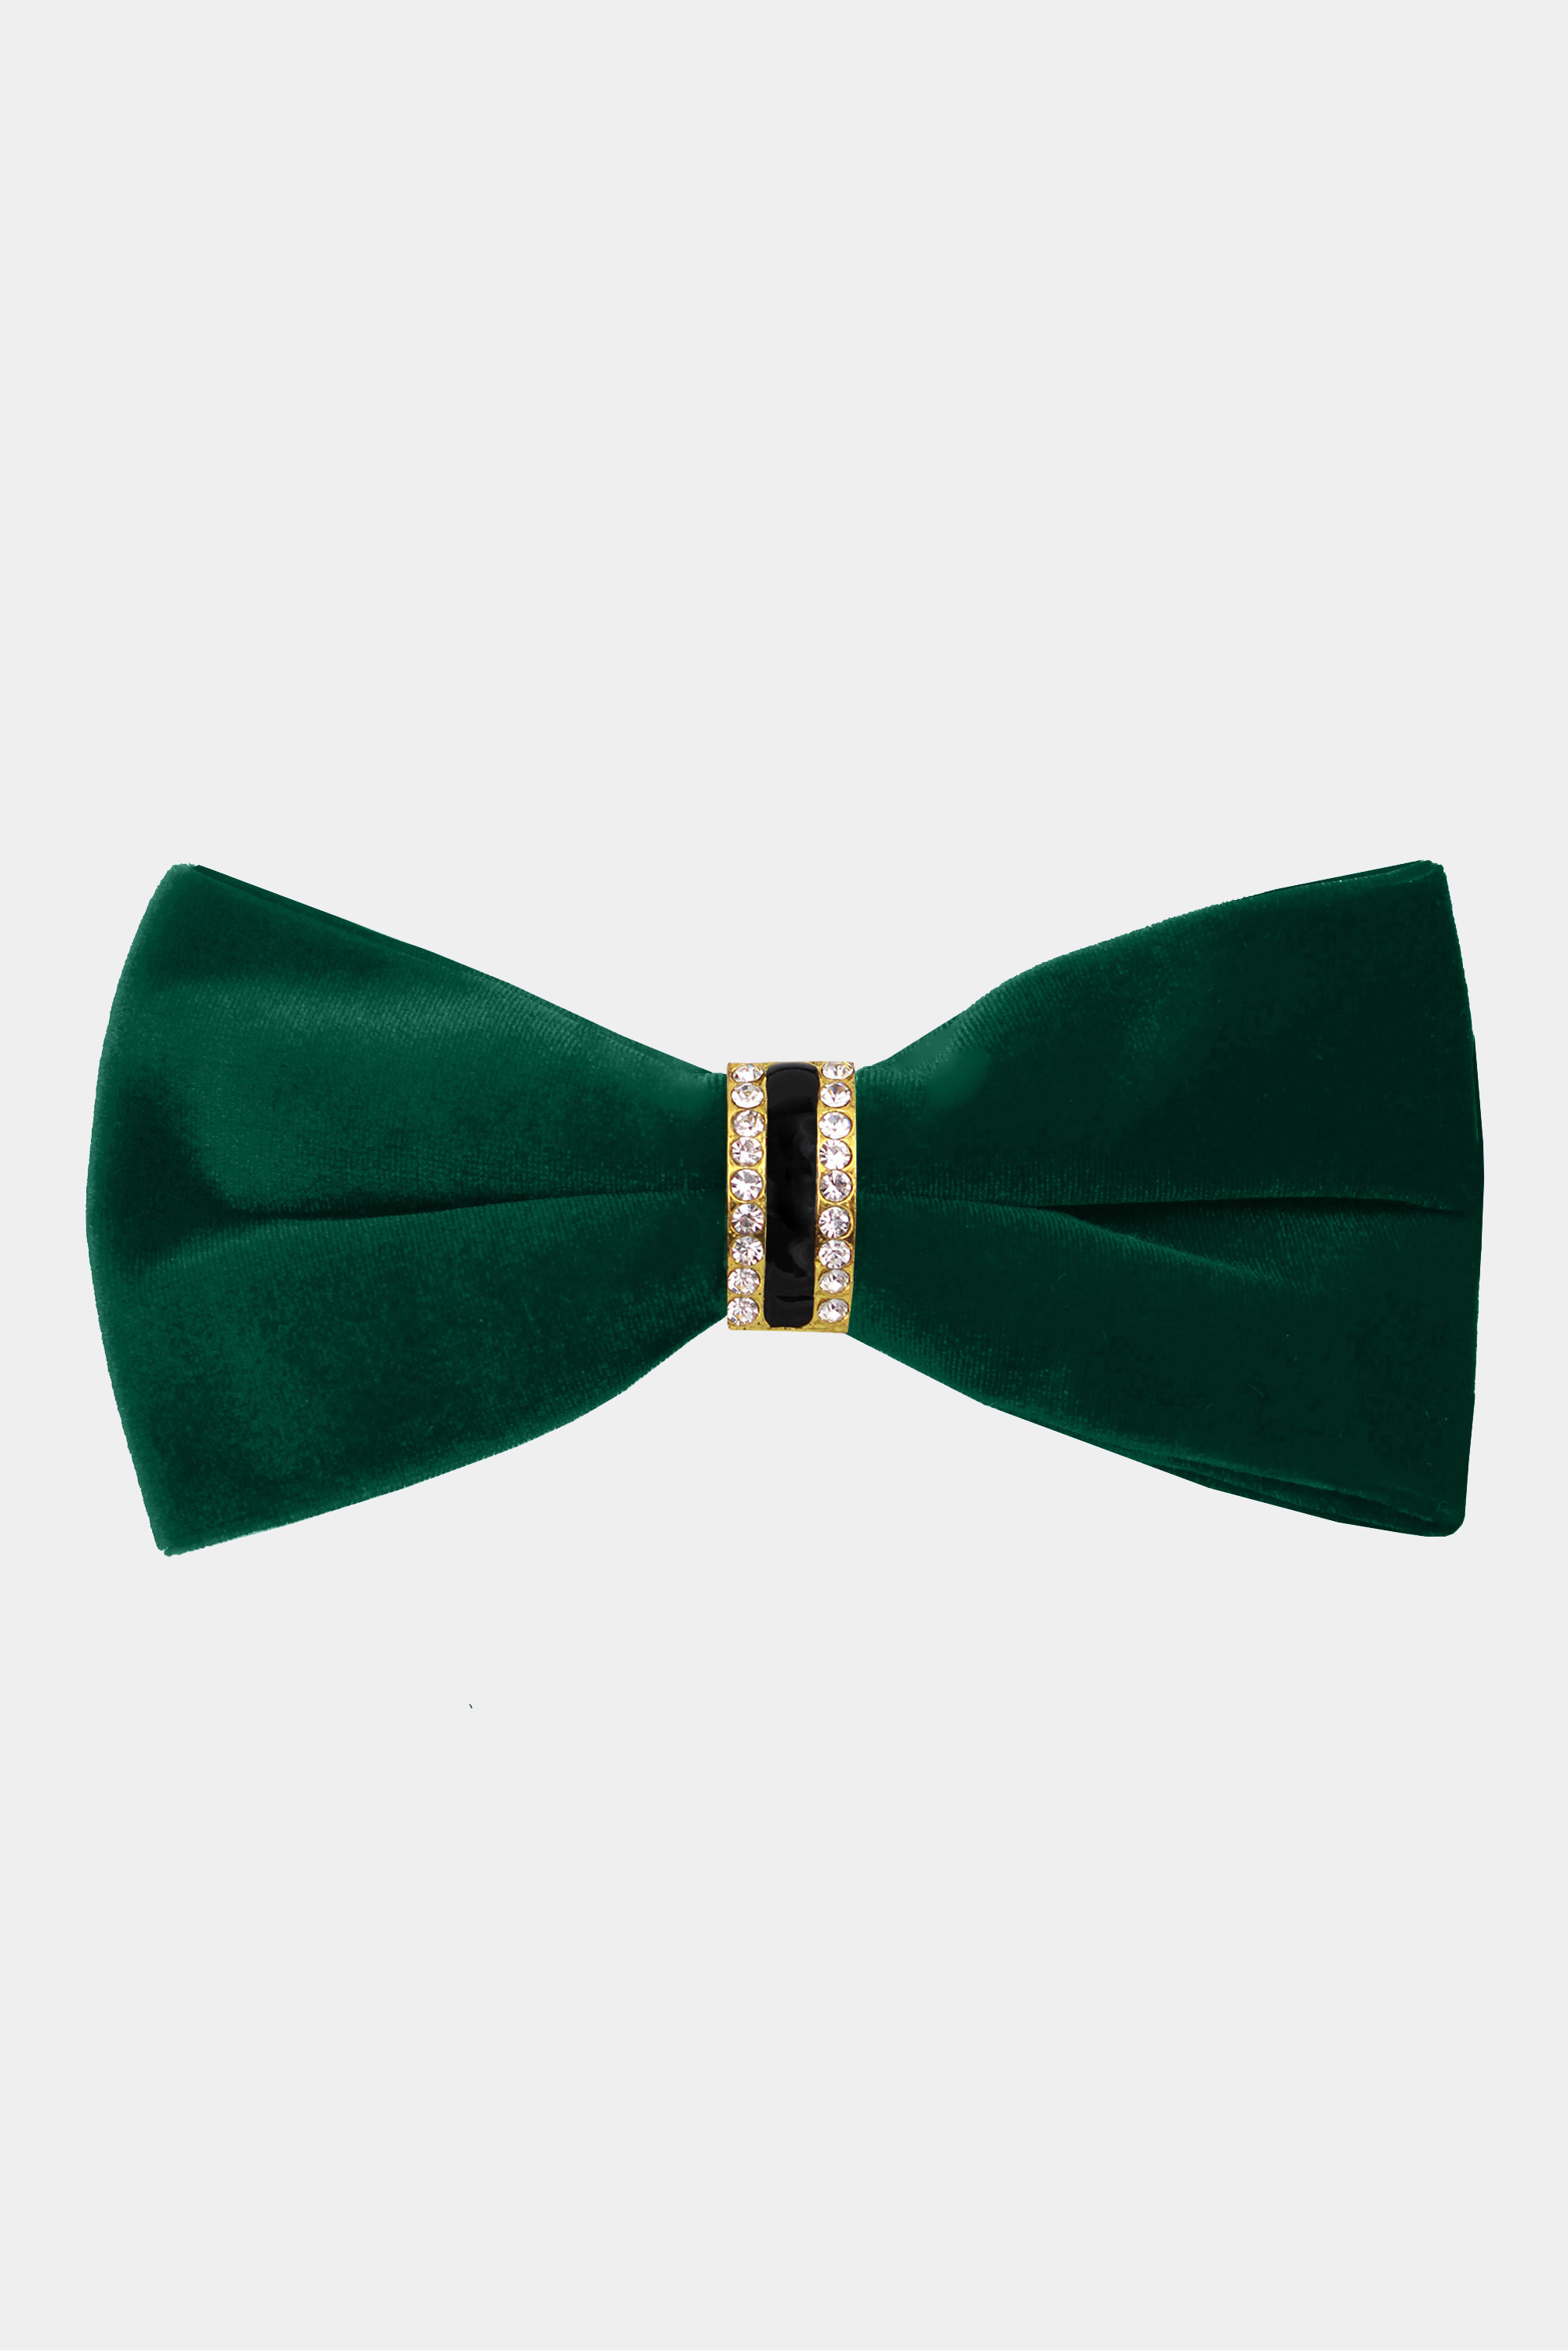 Crystal Green Velvet Bow Tie